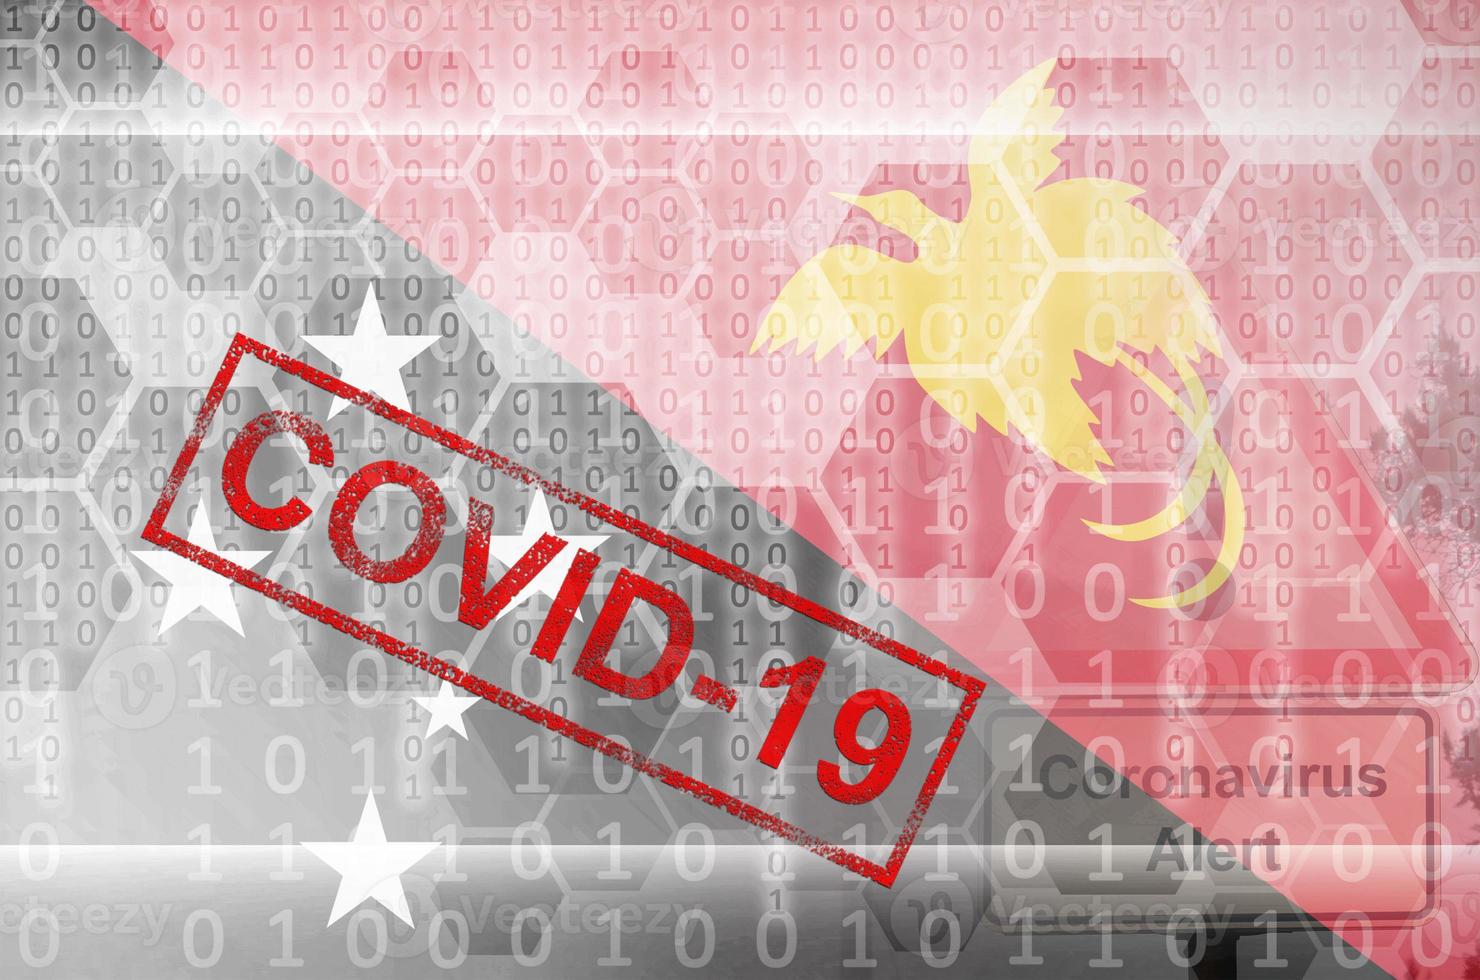 bandeira de papua nova guiné e composição abstrata digital futurista com carimbo covid-19. conceito de surto de coronavírus foto